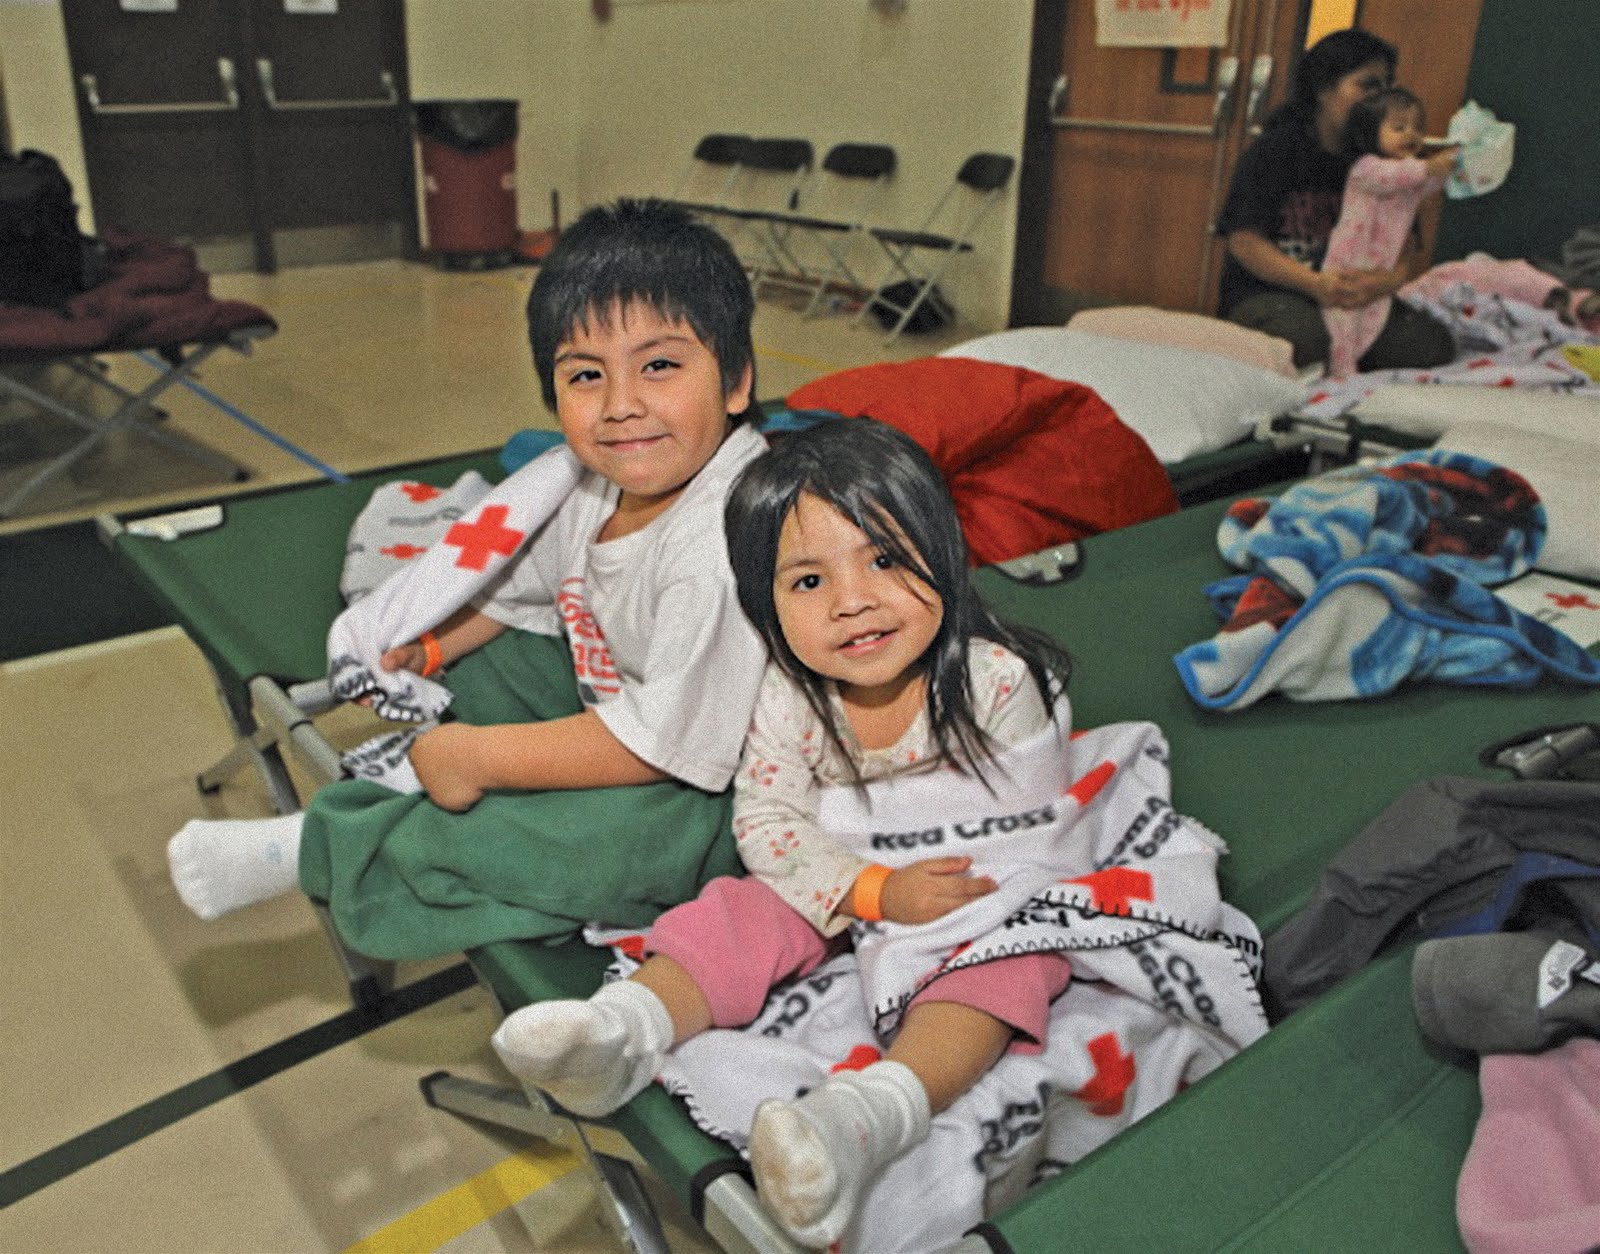 Children Shelter